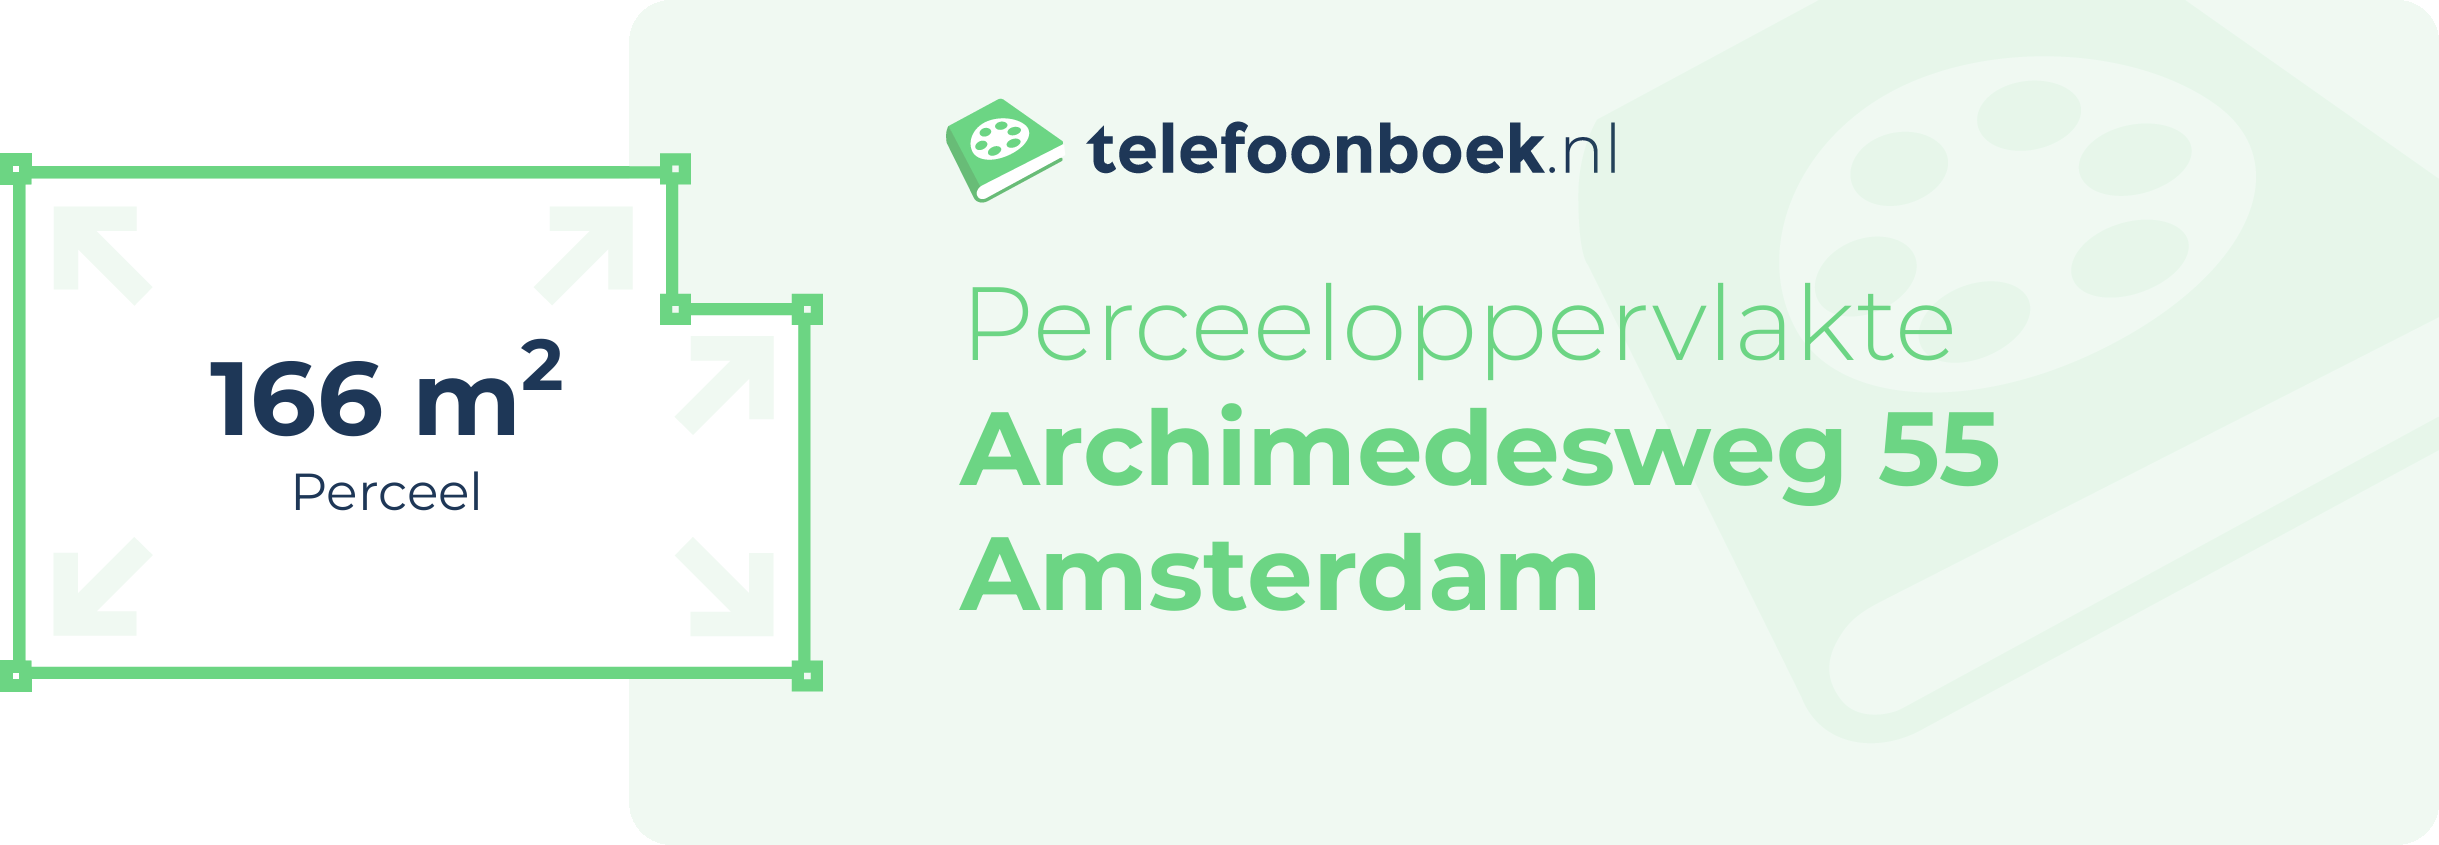 Perceeloppervlakte Archimedesweg 55 Amsterdam